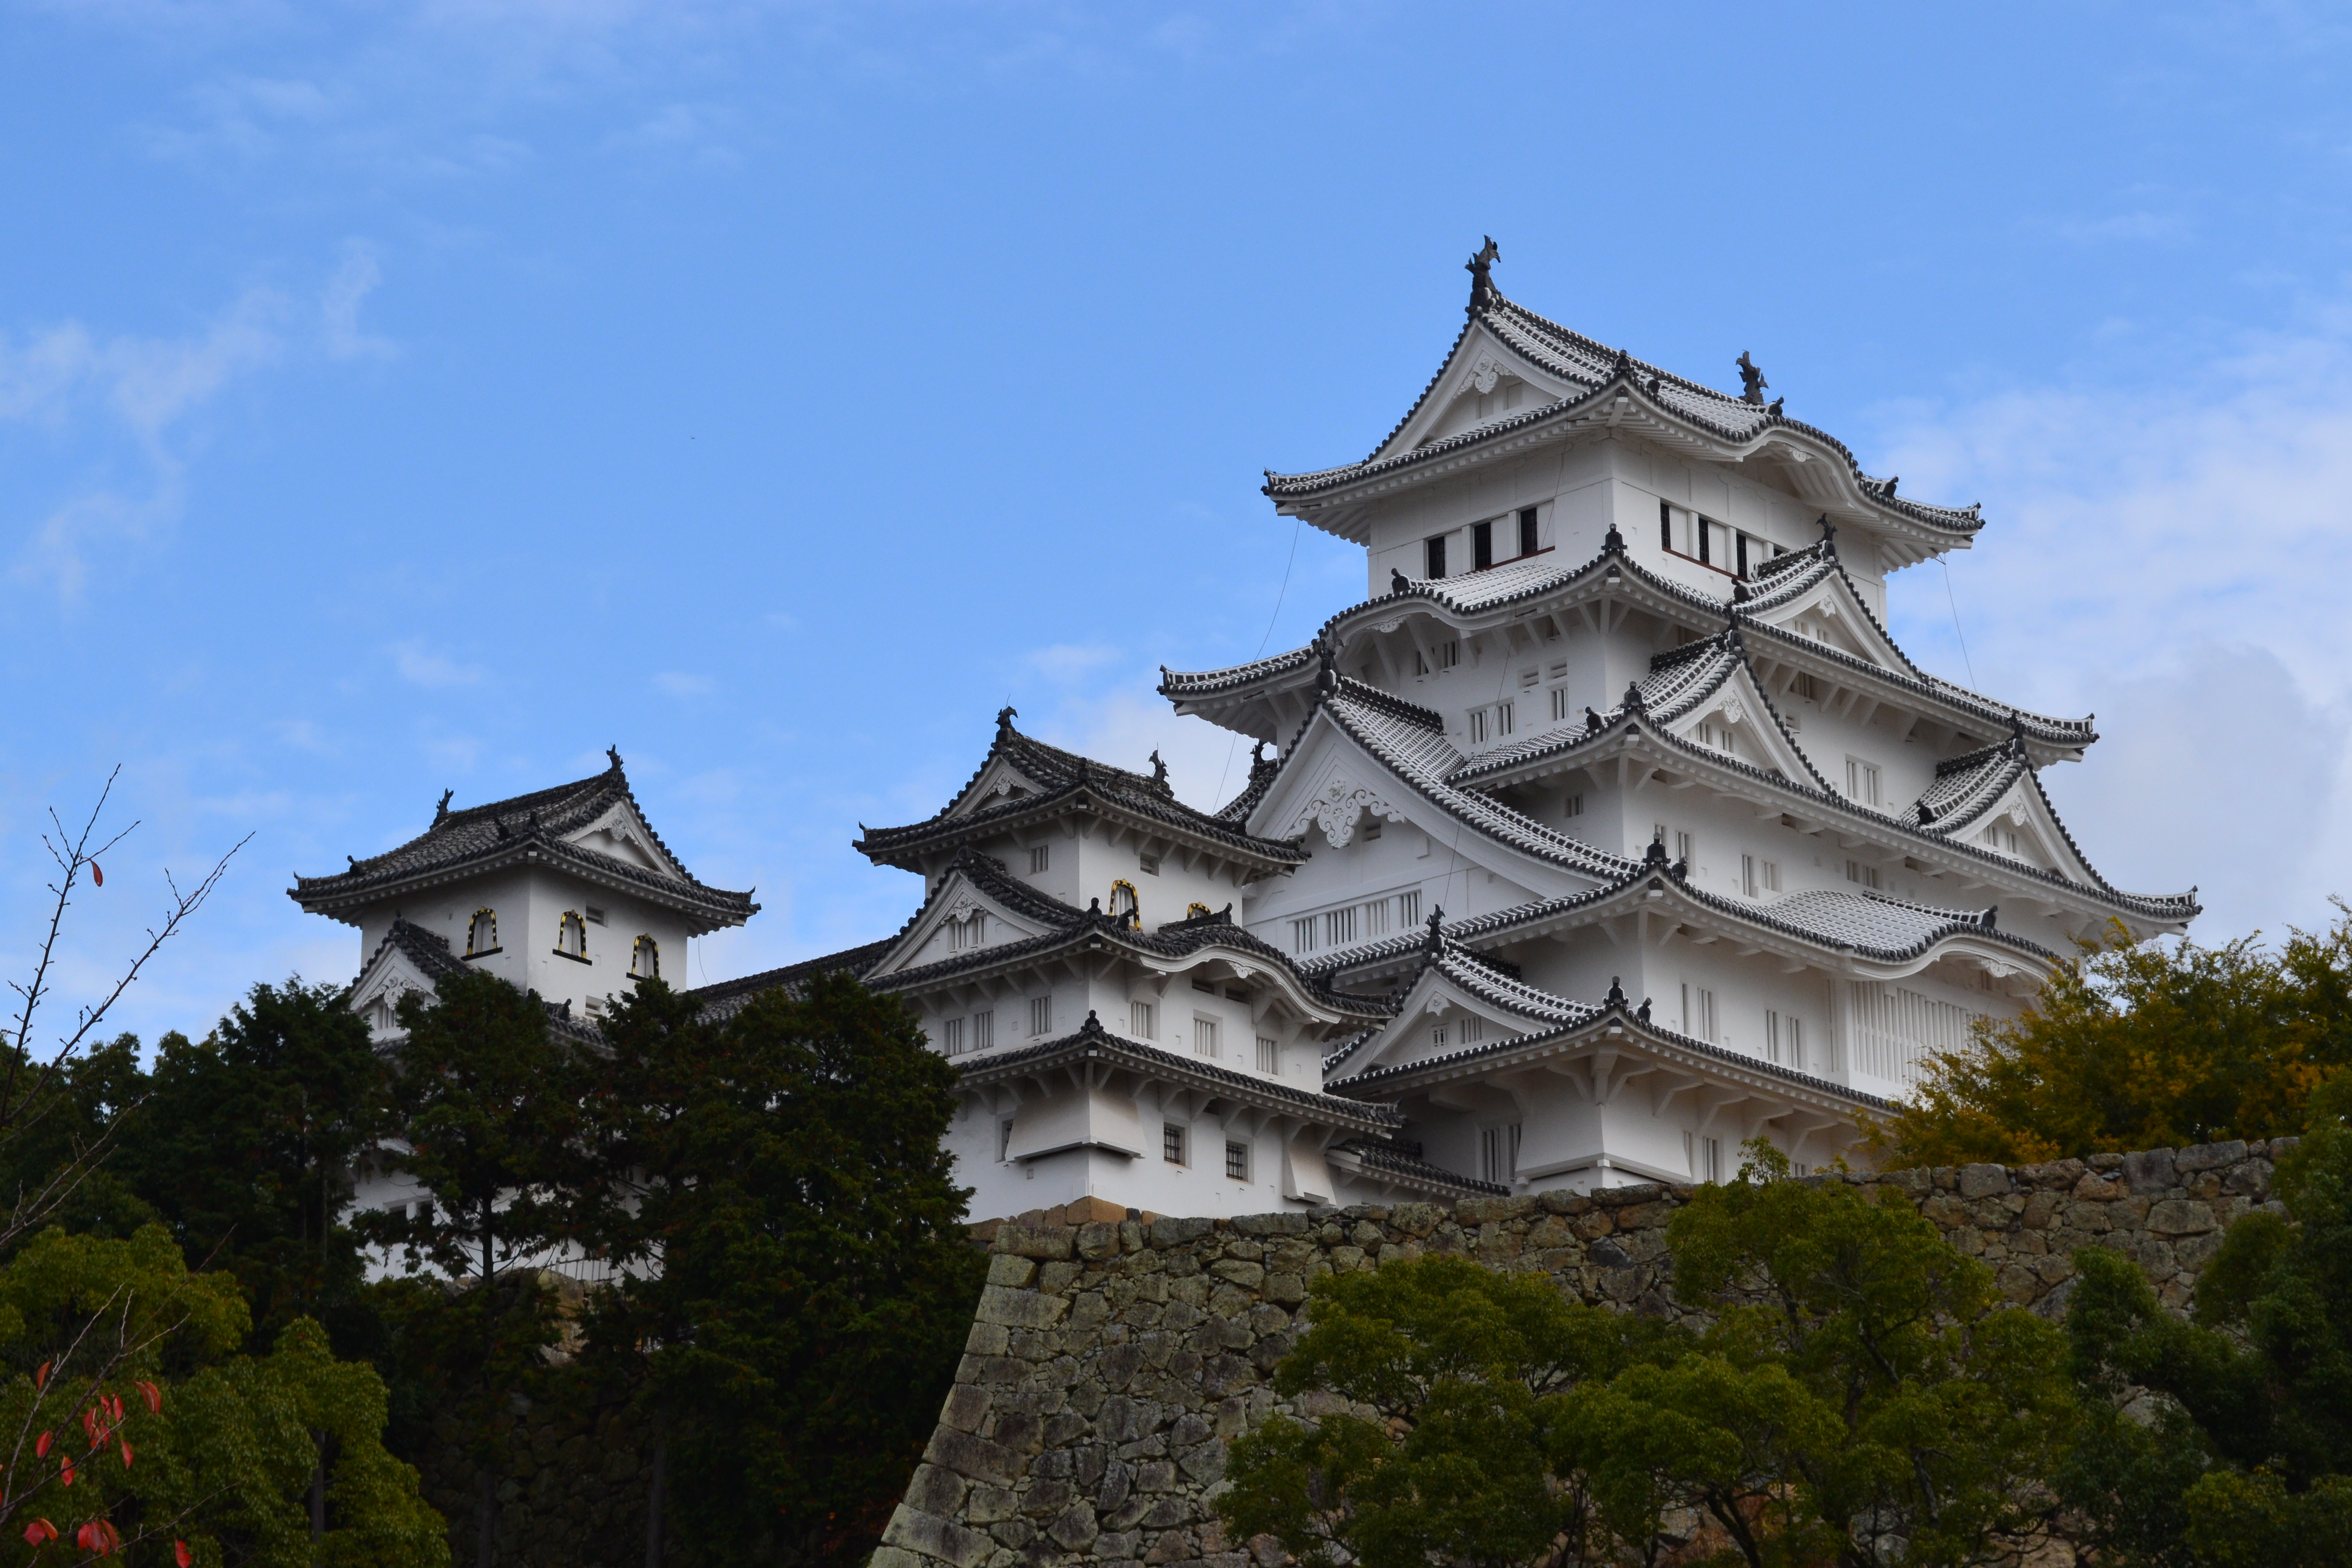 Japan Day 8 – Himeji Castle 姫路城, Osaka (Dōtonbori)